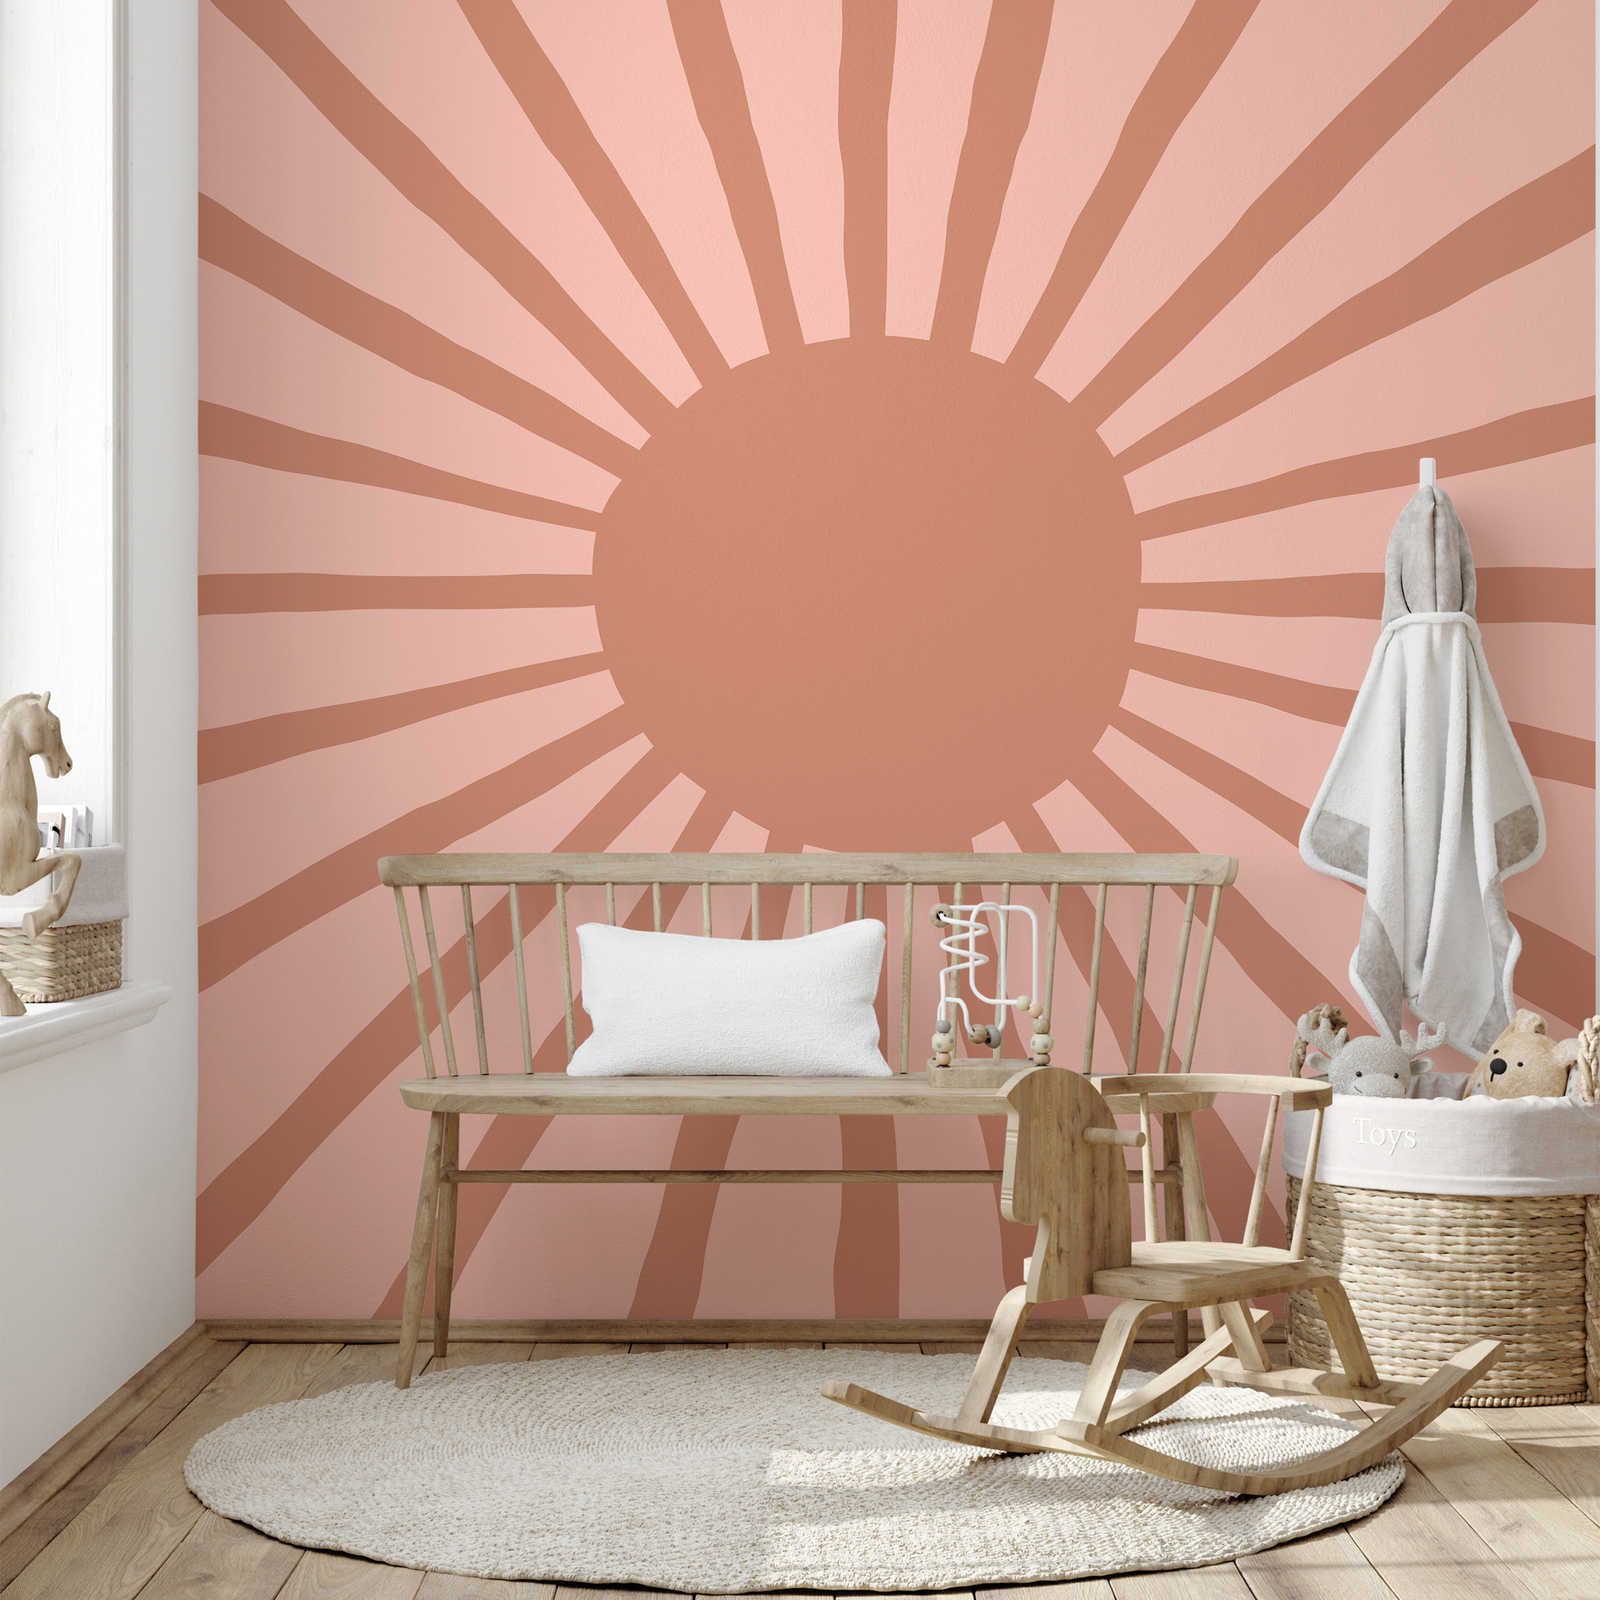 Abstract zonbehang in geschilderde stijl - glad & parelmoer
